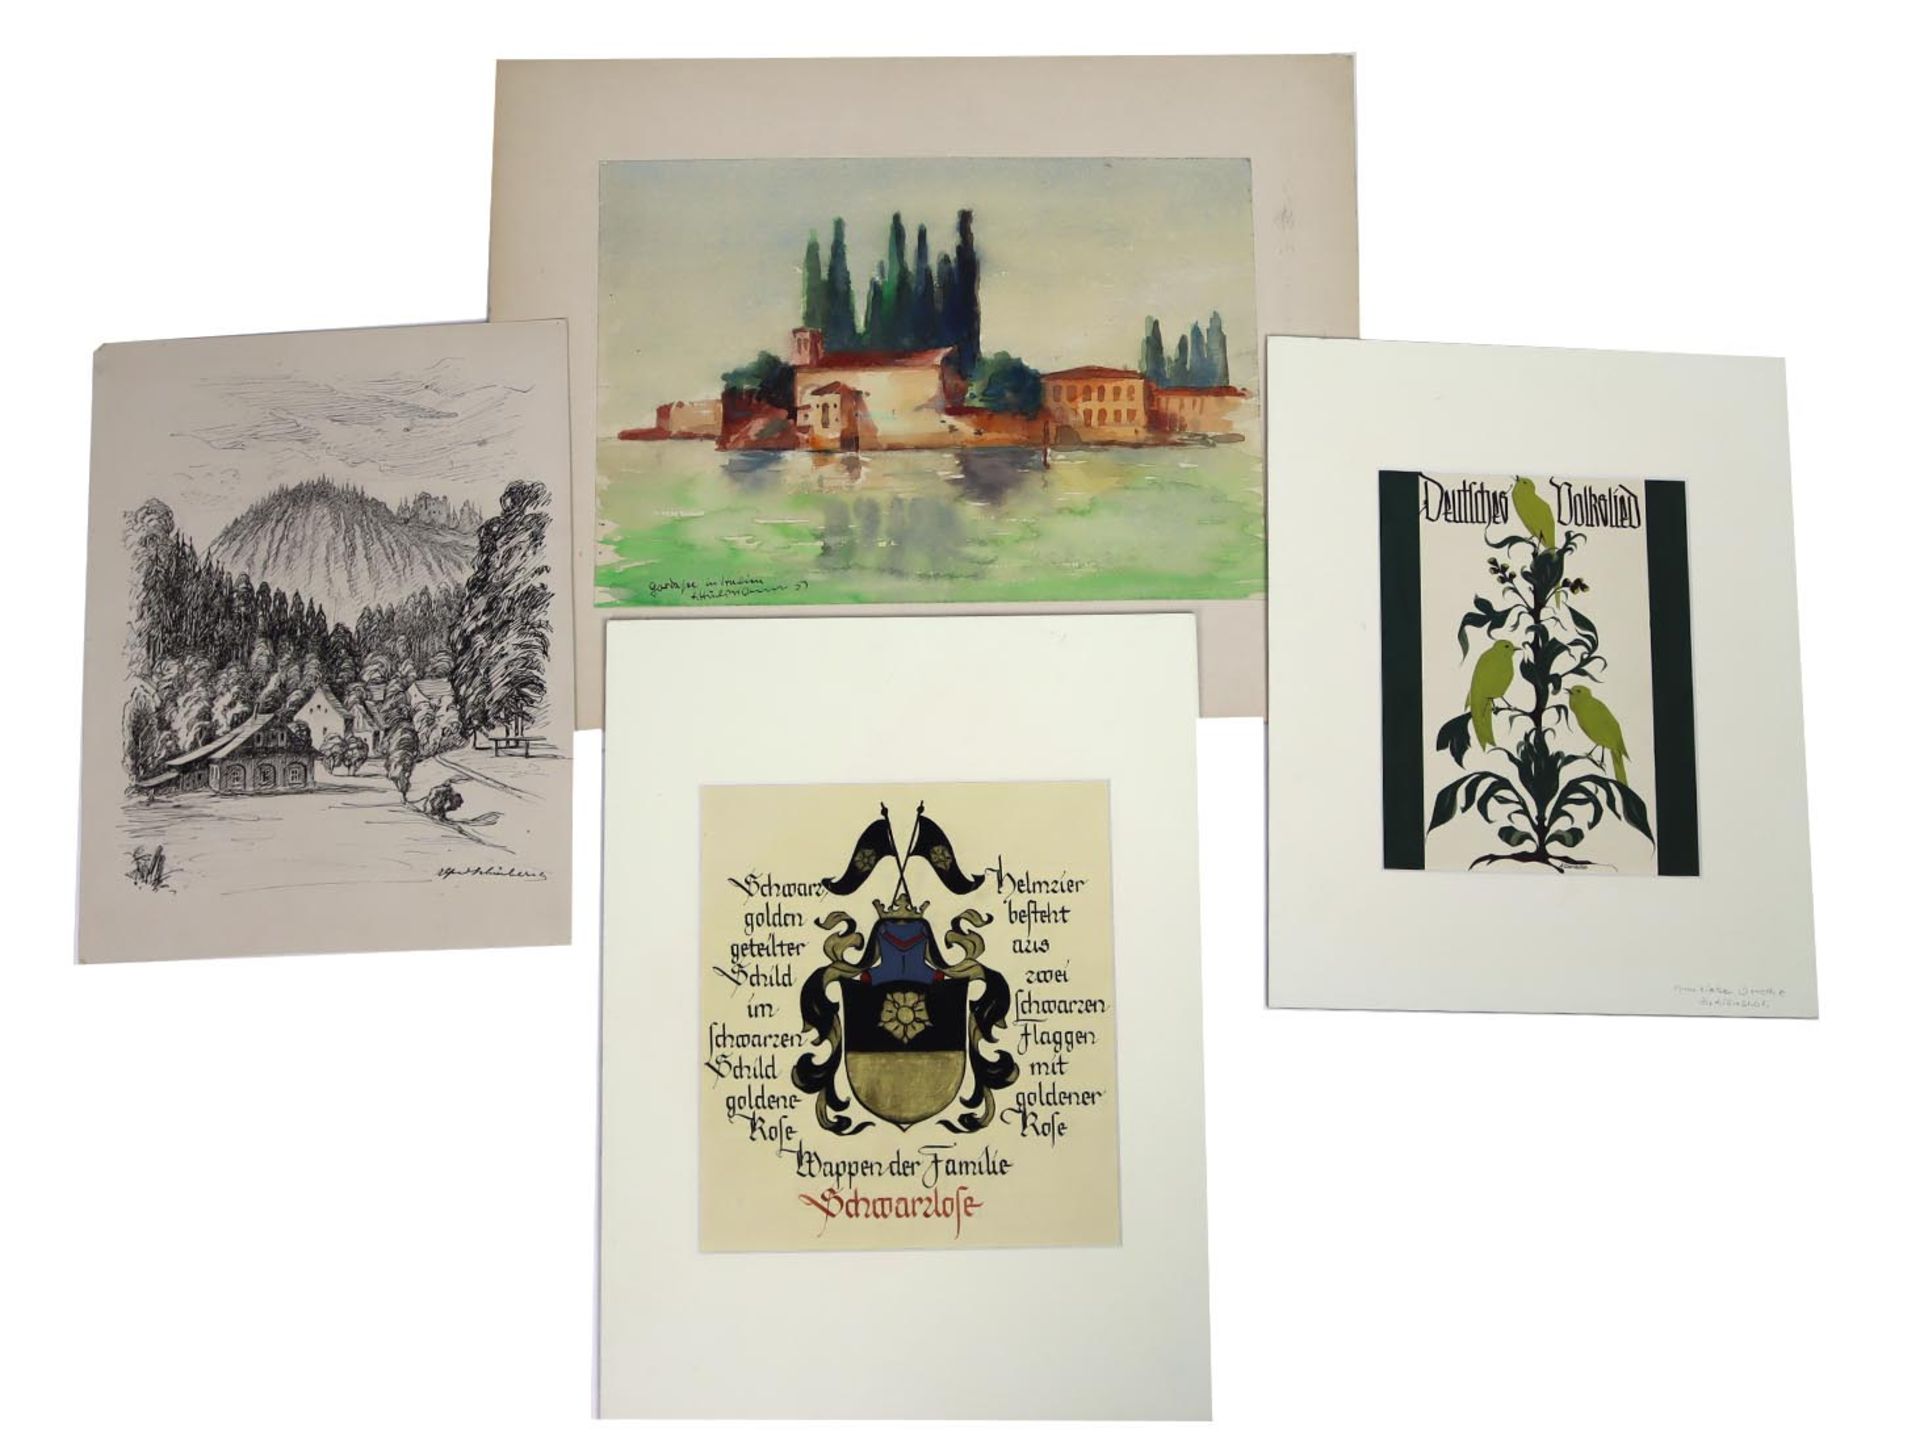 4 Zeichnungen - signiertdabei Wappen der Familie Schwarzlose sowie Illustration signiert A. Denecke,